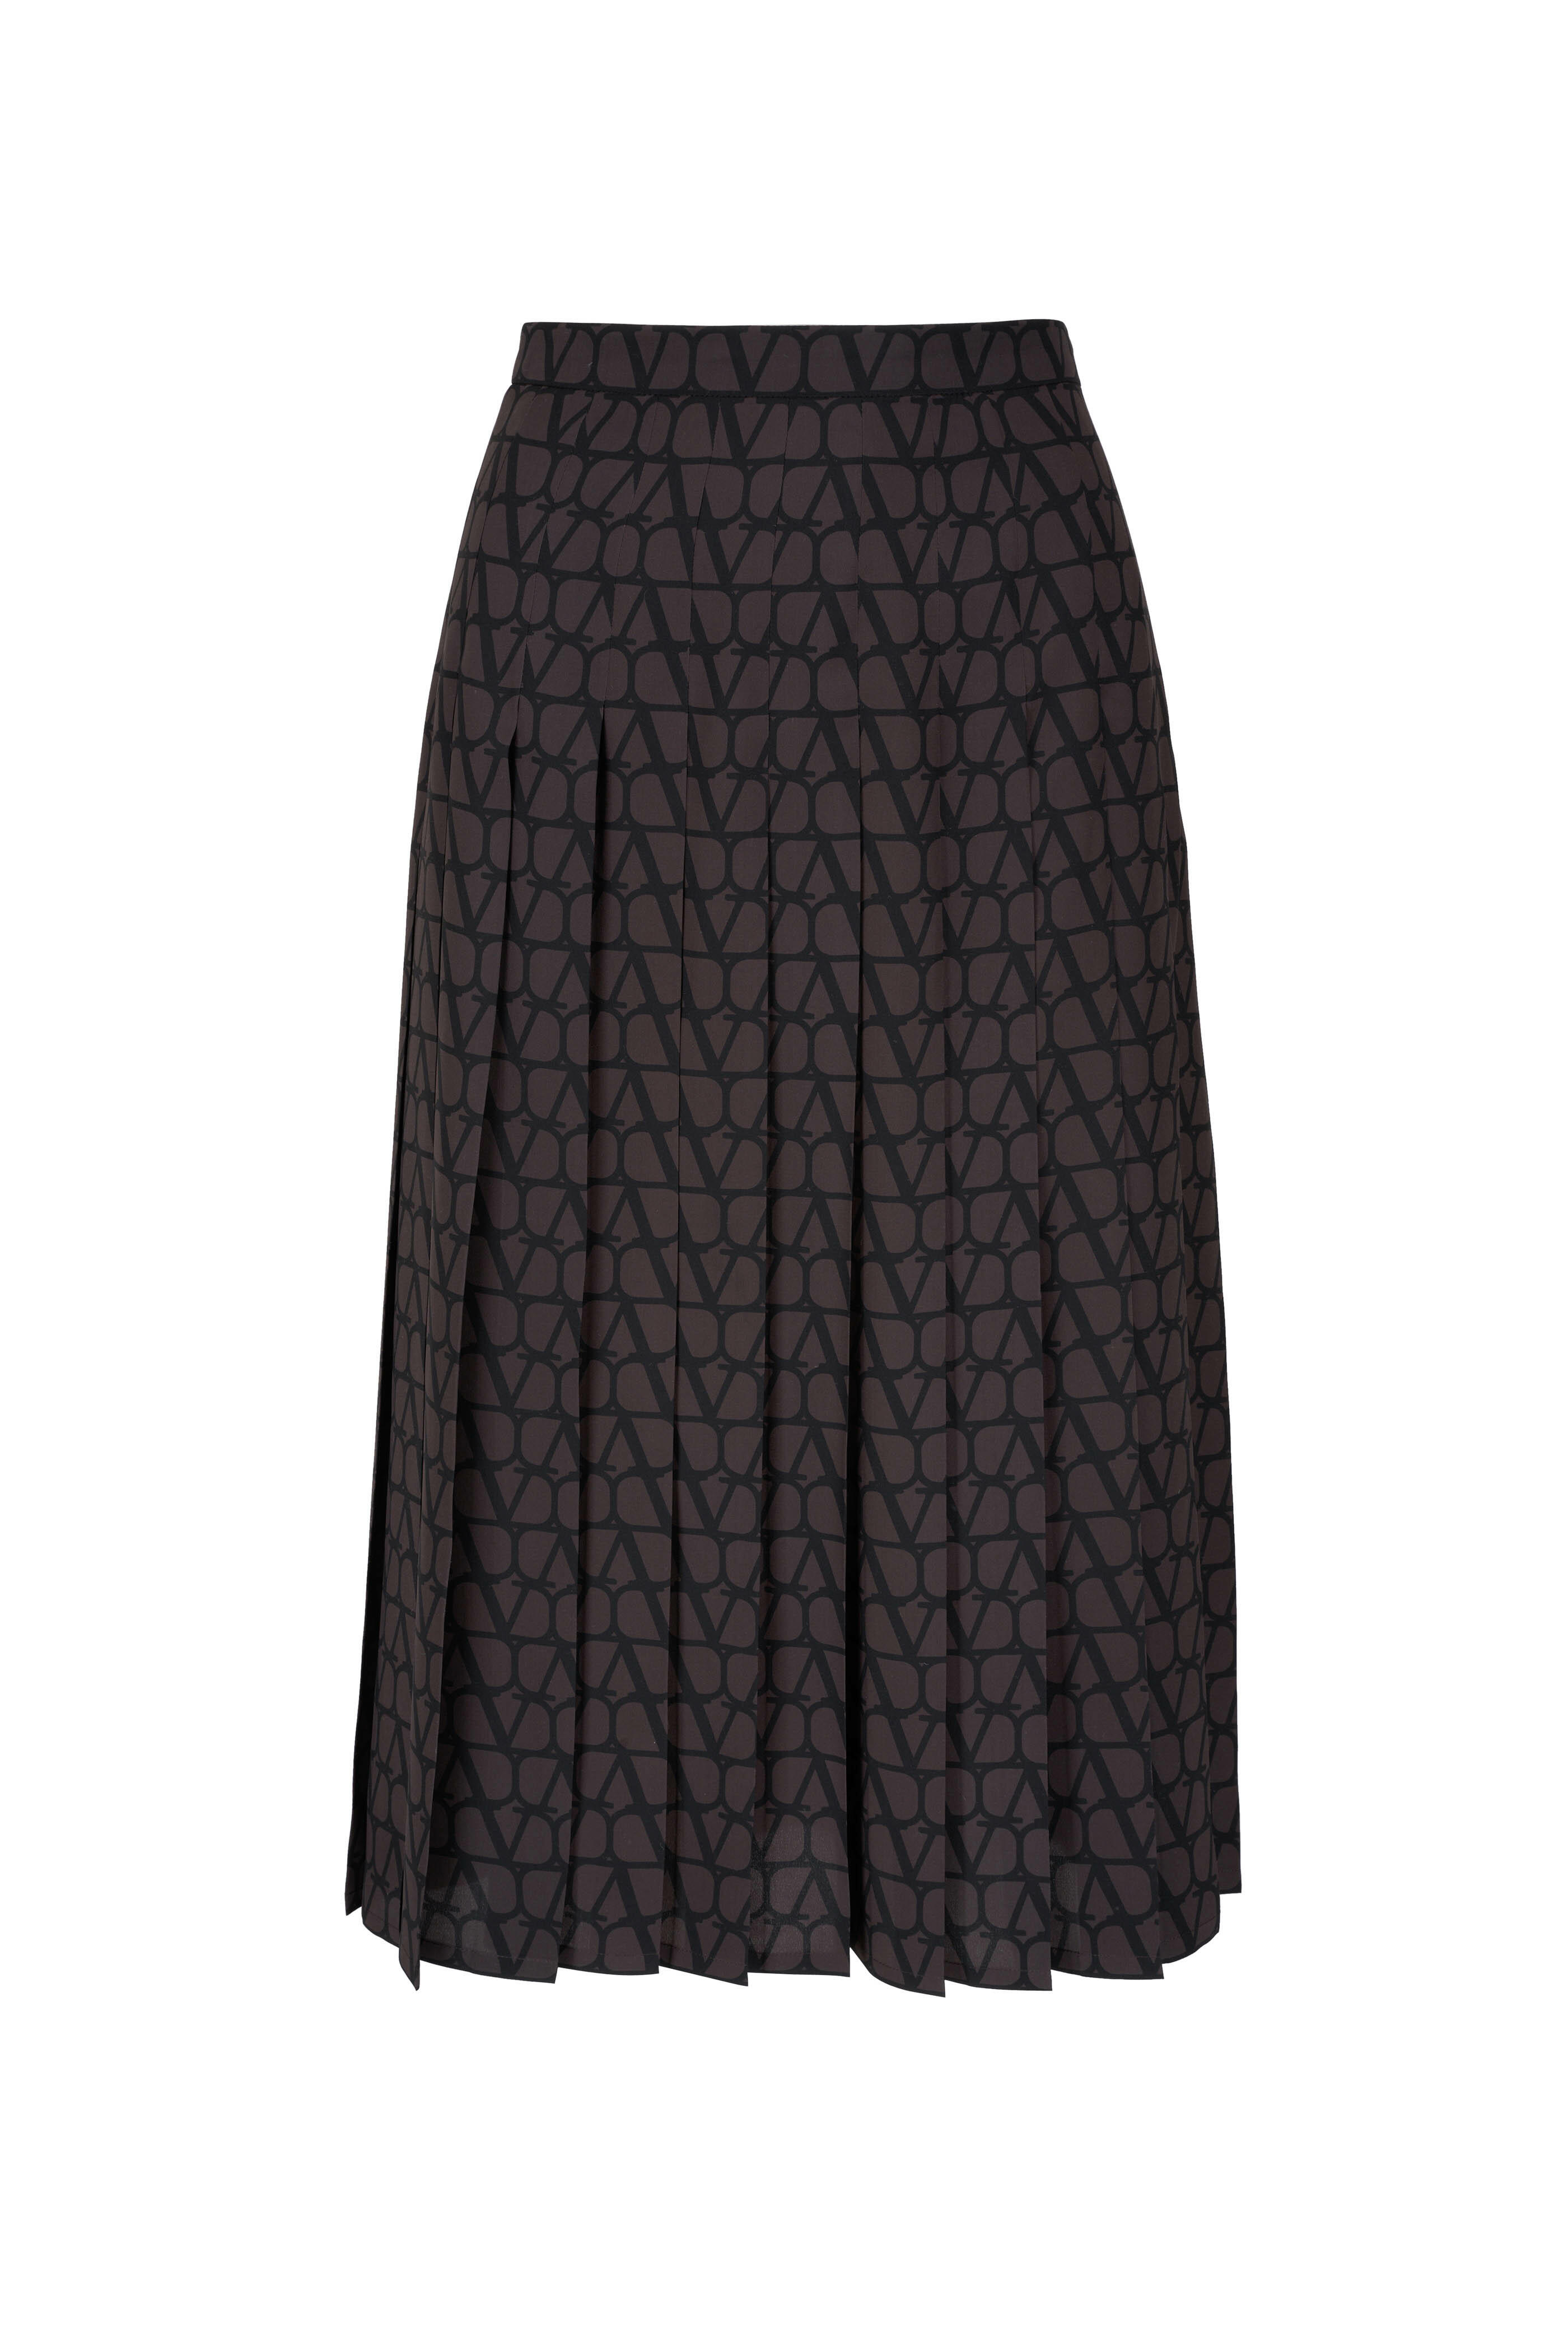 Valentino - Brown & Black VLogo Silk Skirt | Mitchell Stores